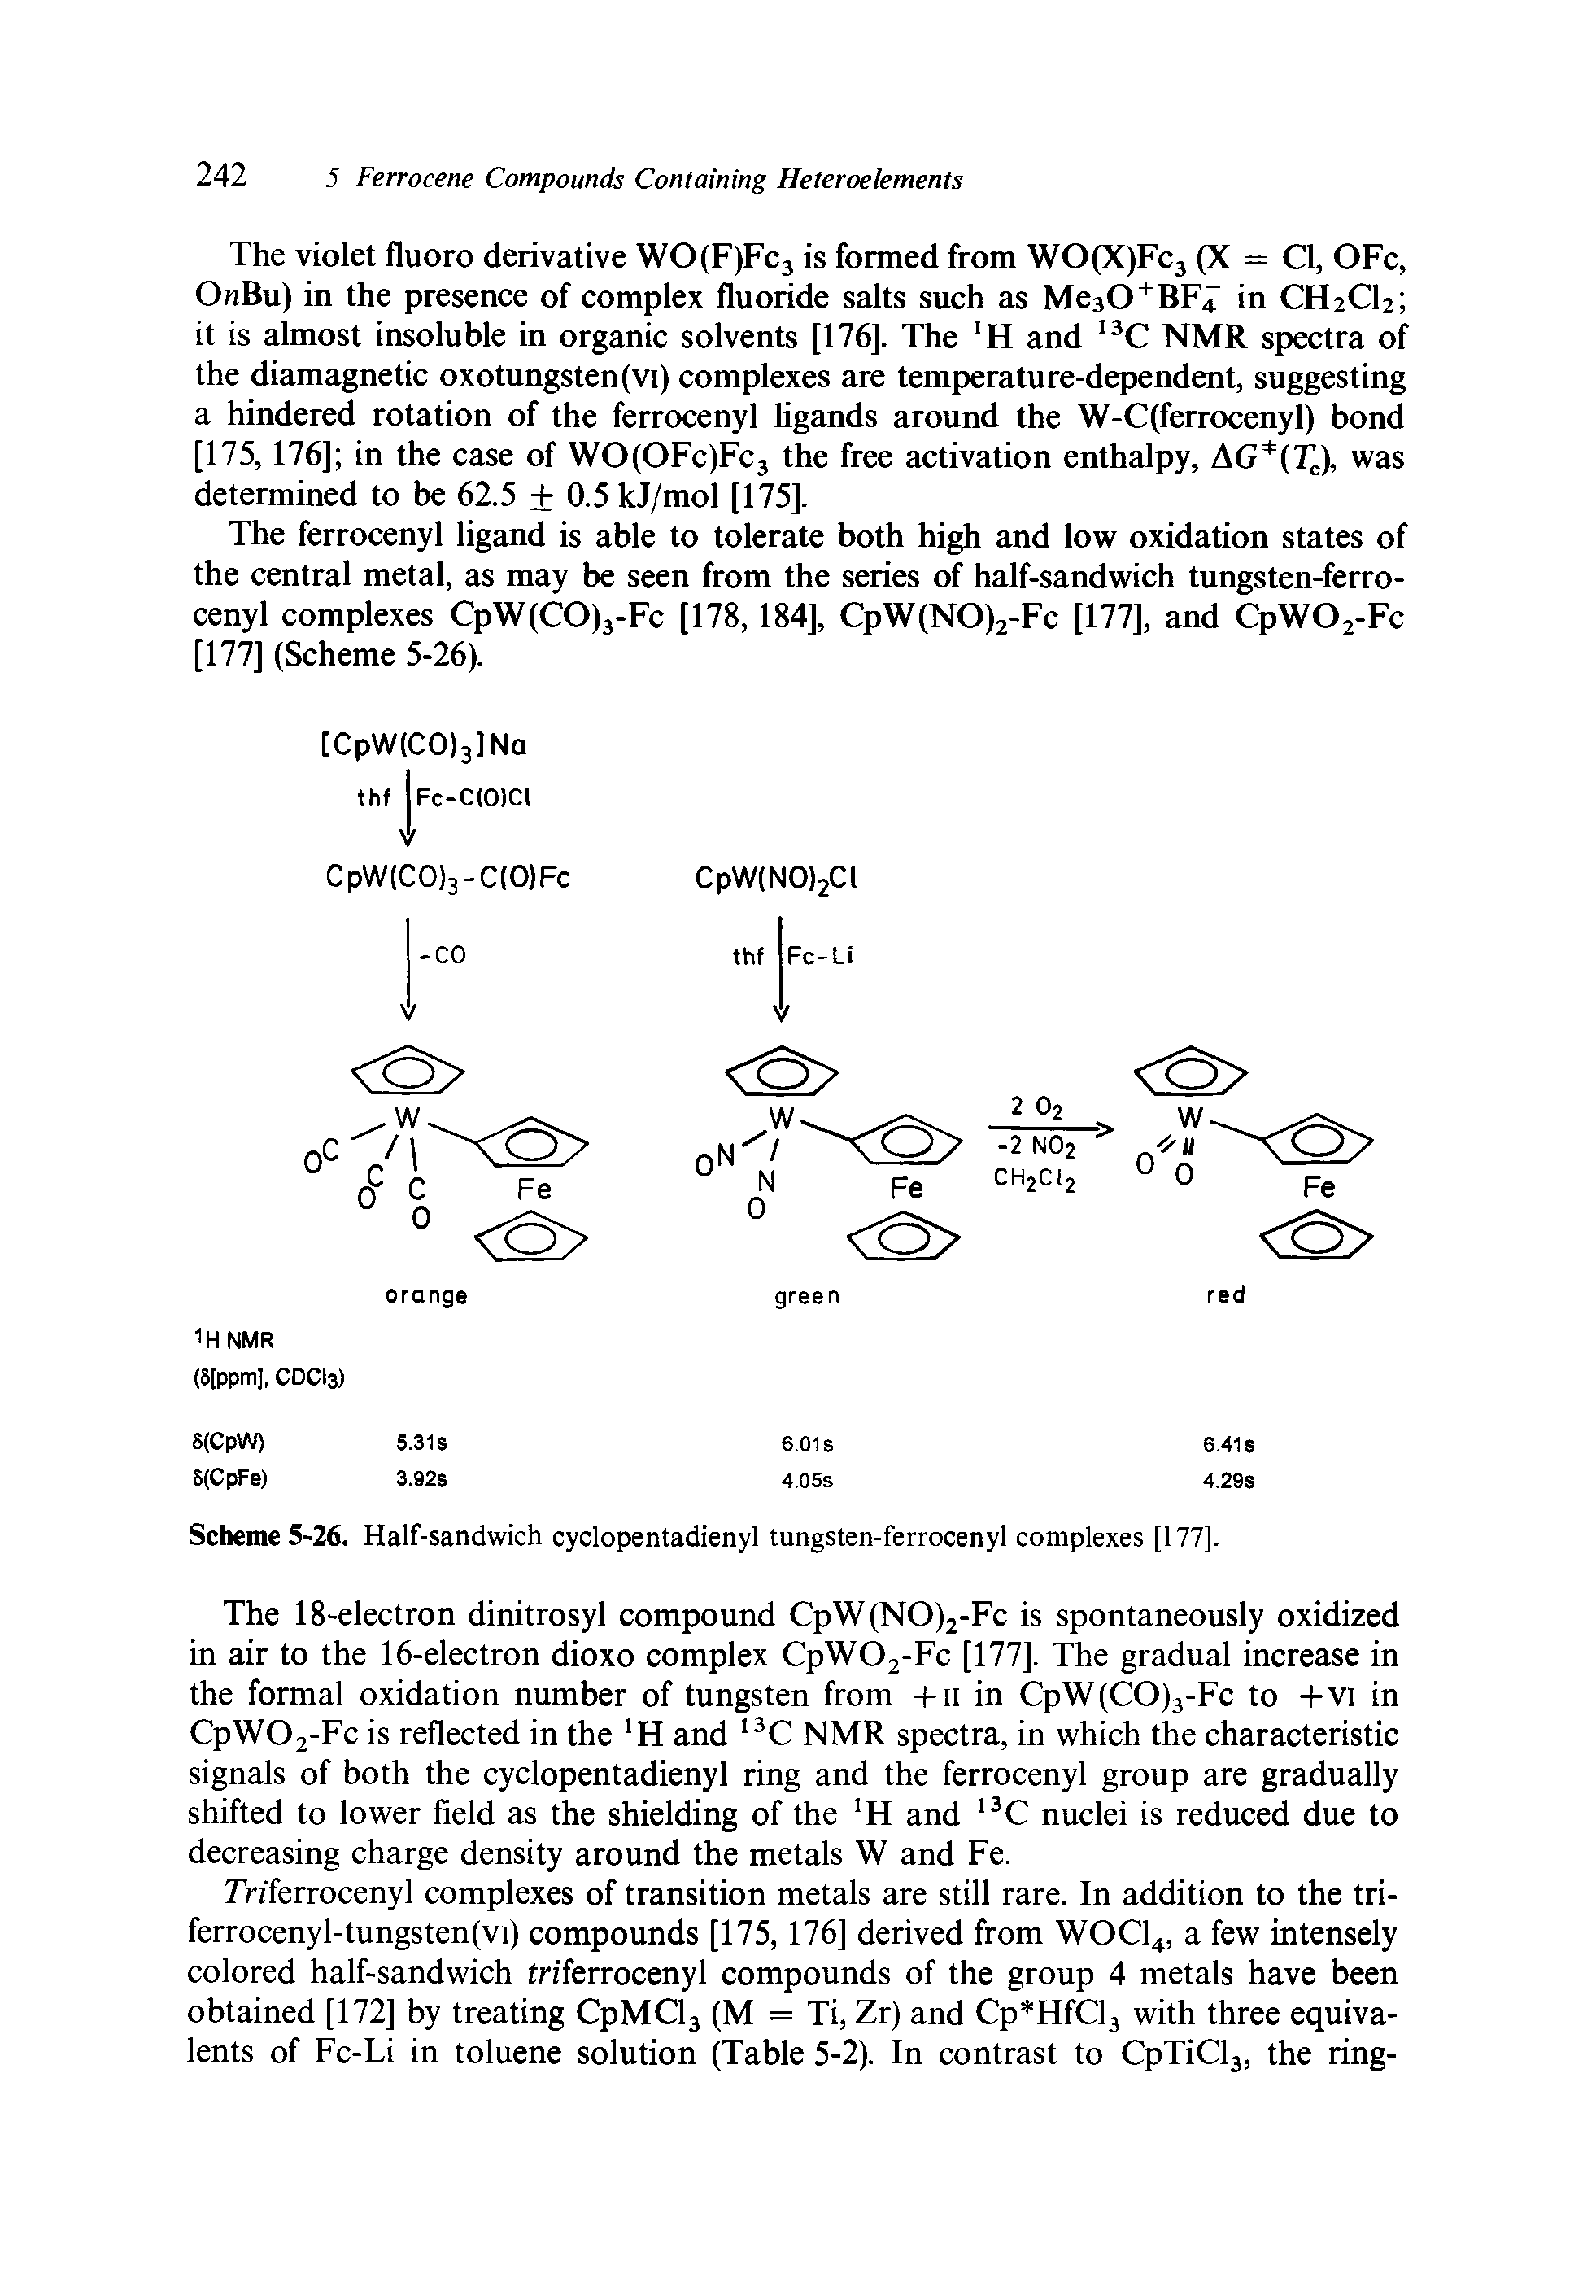 Scheme 5-26. Half-sandwich cyclopentadienyl tungsten-ferrocenyl complexes [177].